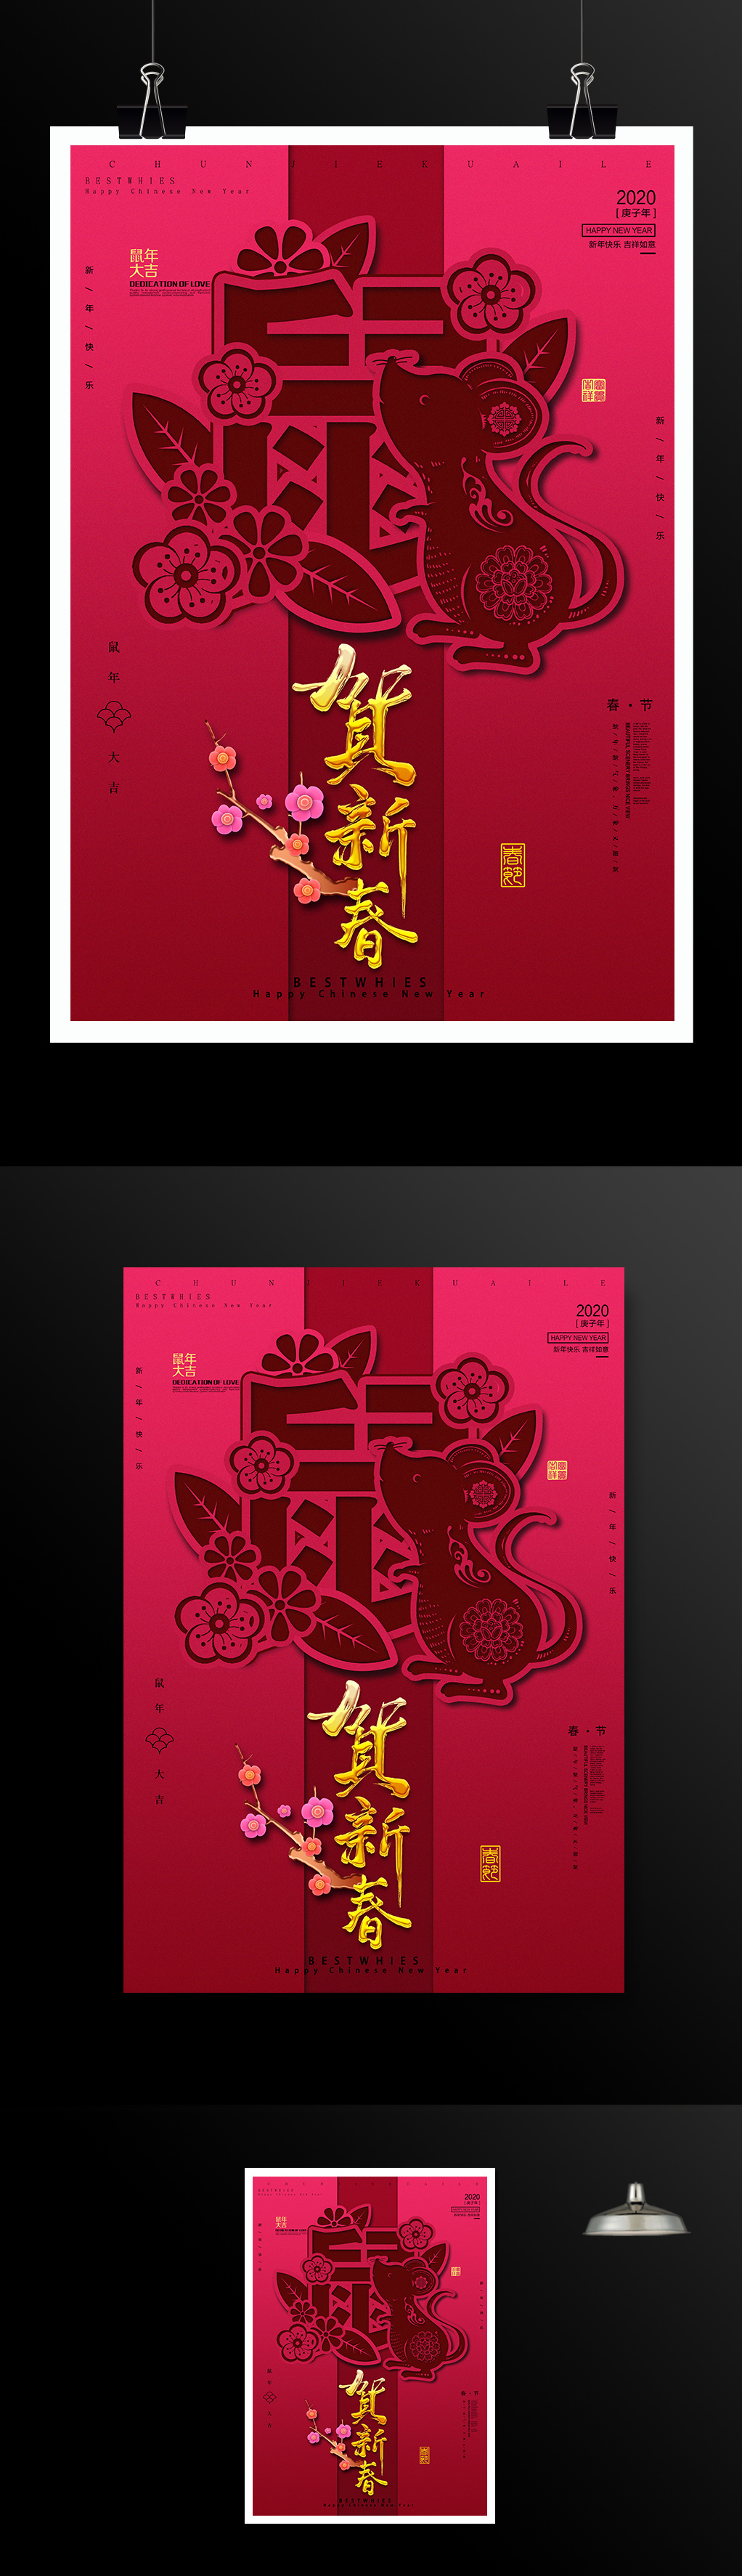 中国传统节日贺新春鼠年春节海报